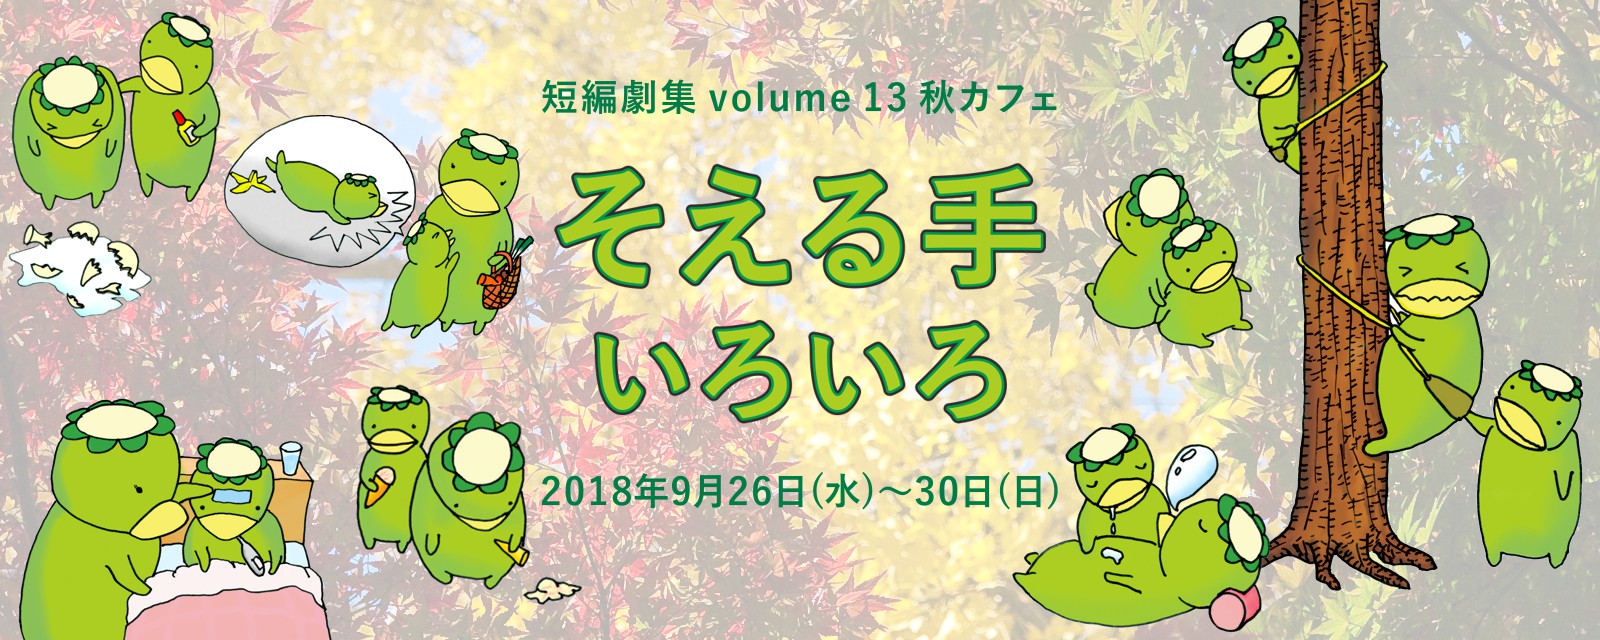 短編劇集 vol.13 春カフェ『そえる手いろいろ』(2018.9.26-30)